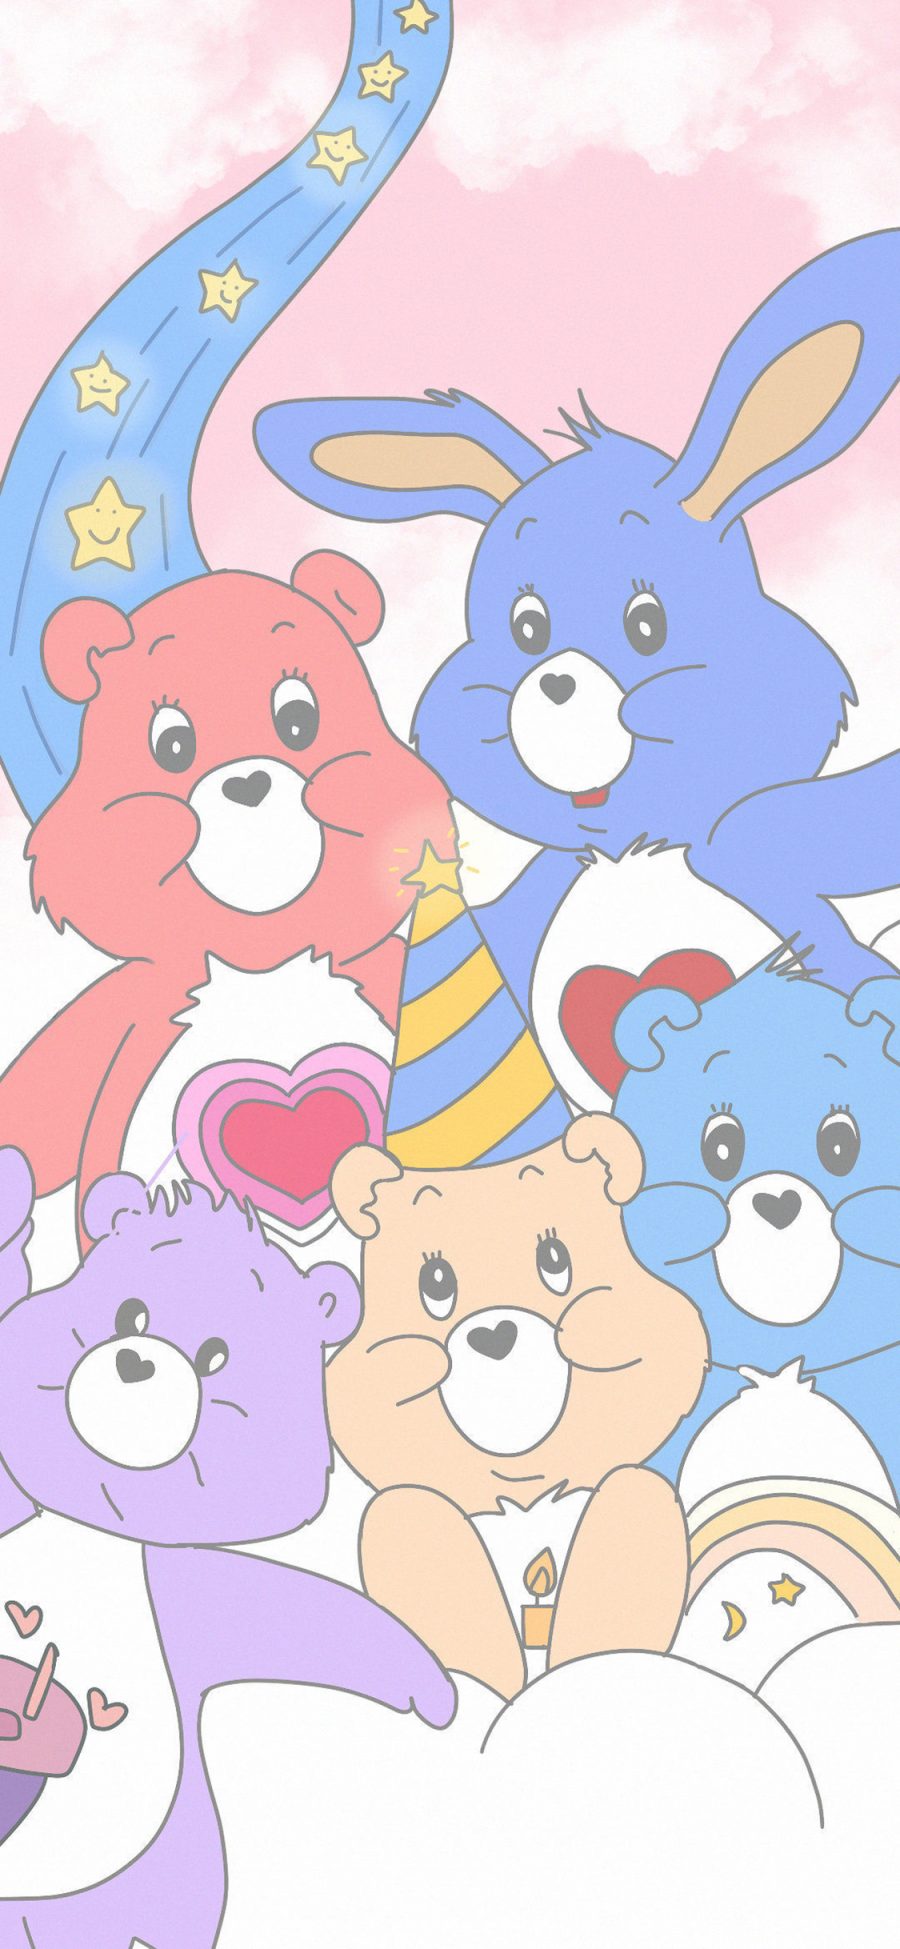 [2436×1125]卡通 动画 彩虹 爱心熊 可爱 苹果手机动漫壁纸图片